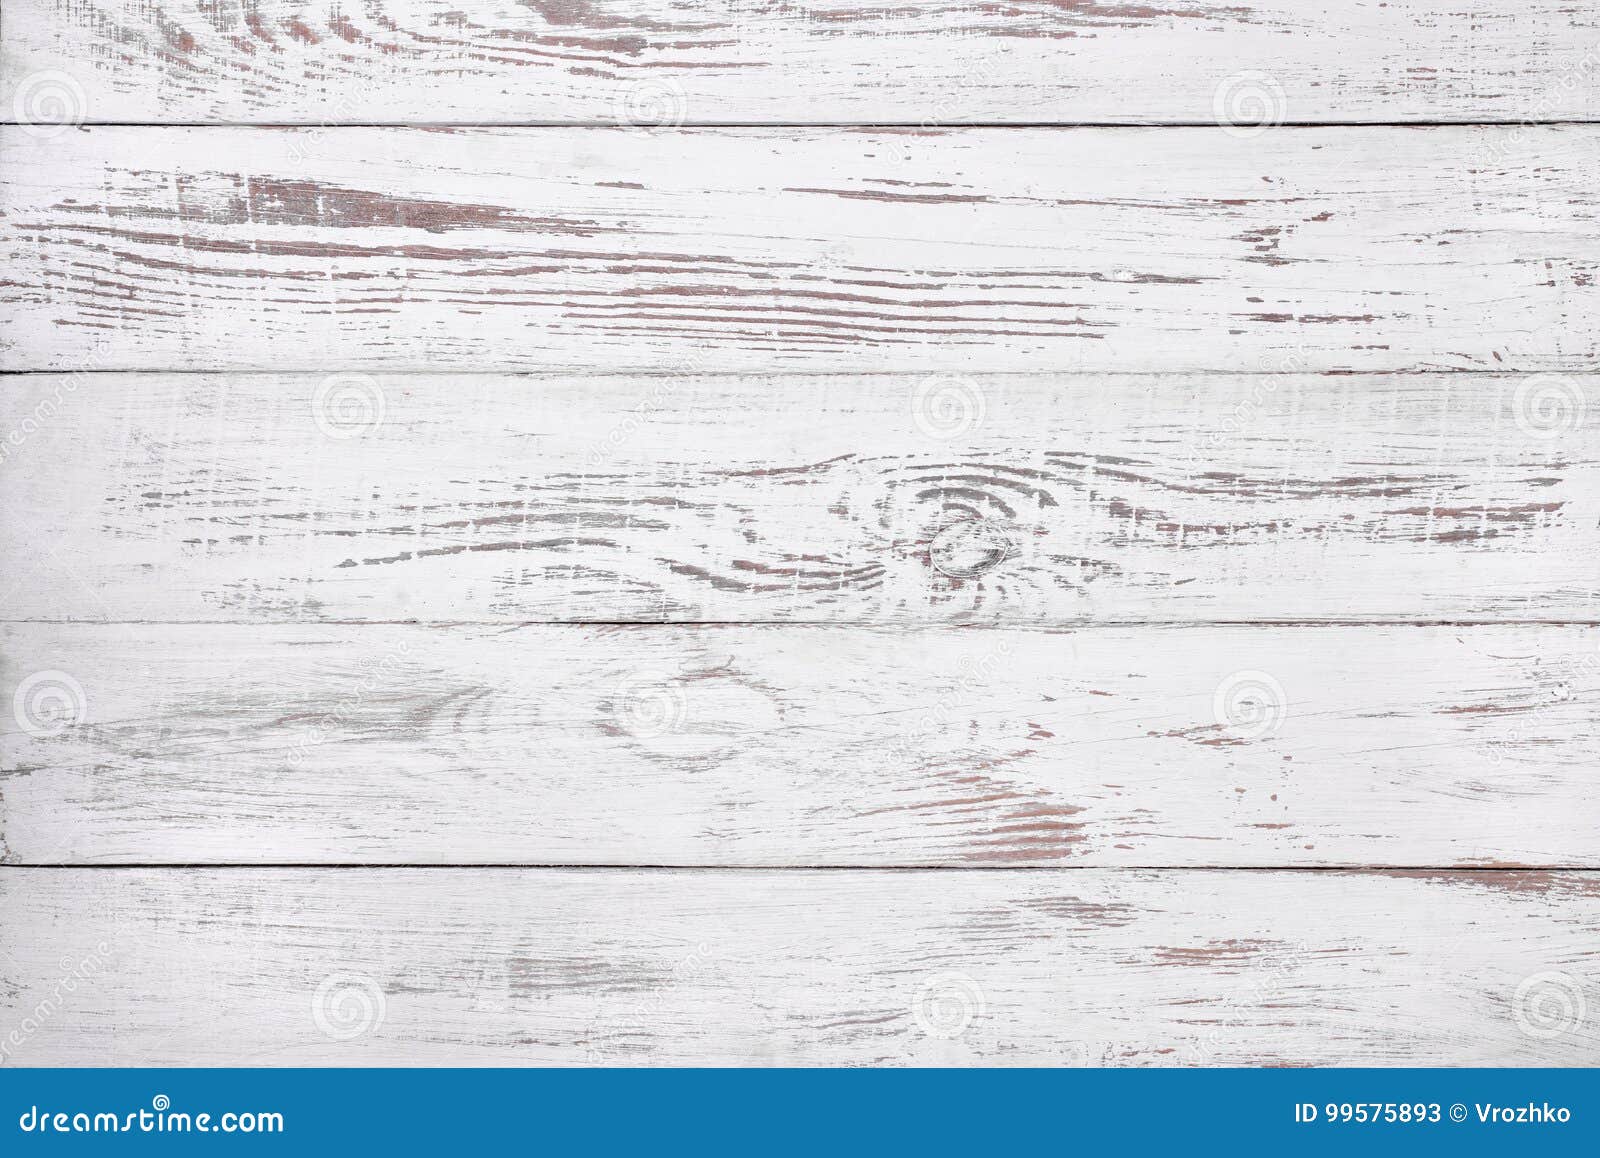 Nét cũ kỹ, tinh túy của gỗ trắng cũ được khai thác và tạo ra một hình ảnh đẹp tuyệt vời.